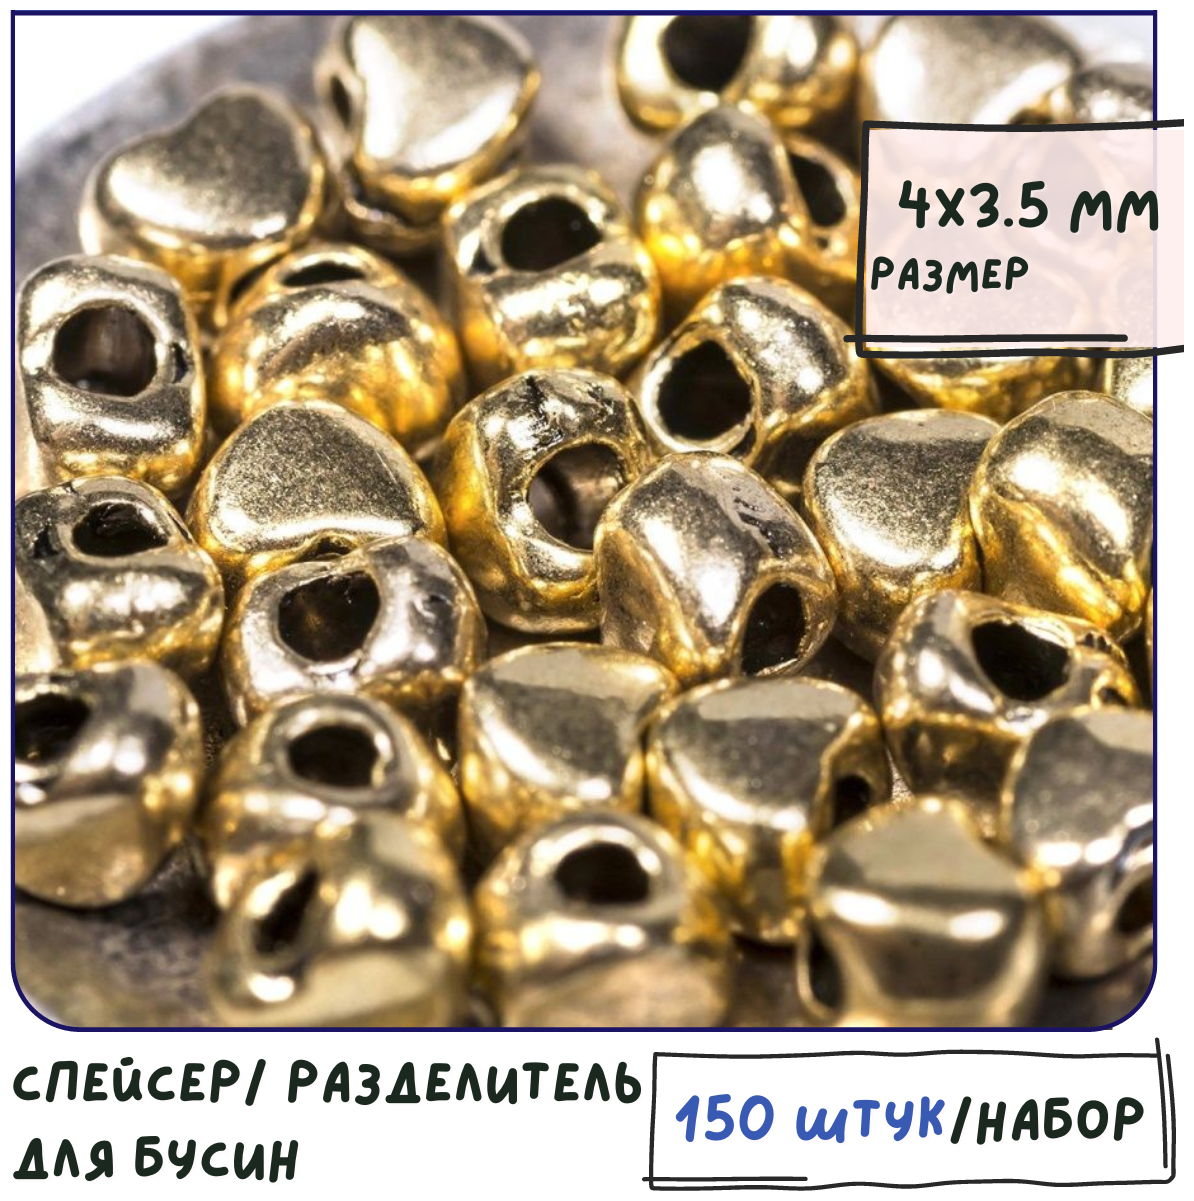 Разделитель для бусин 150 шт. / спейсер, цвет античное золото, 4х3.5 мм